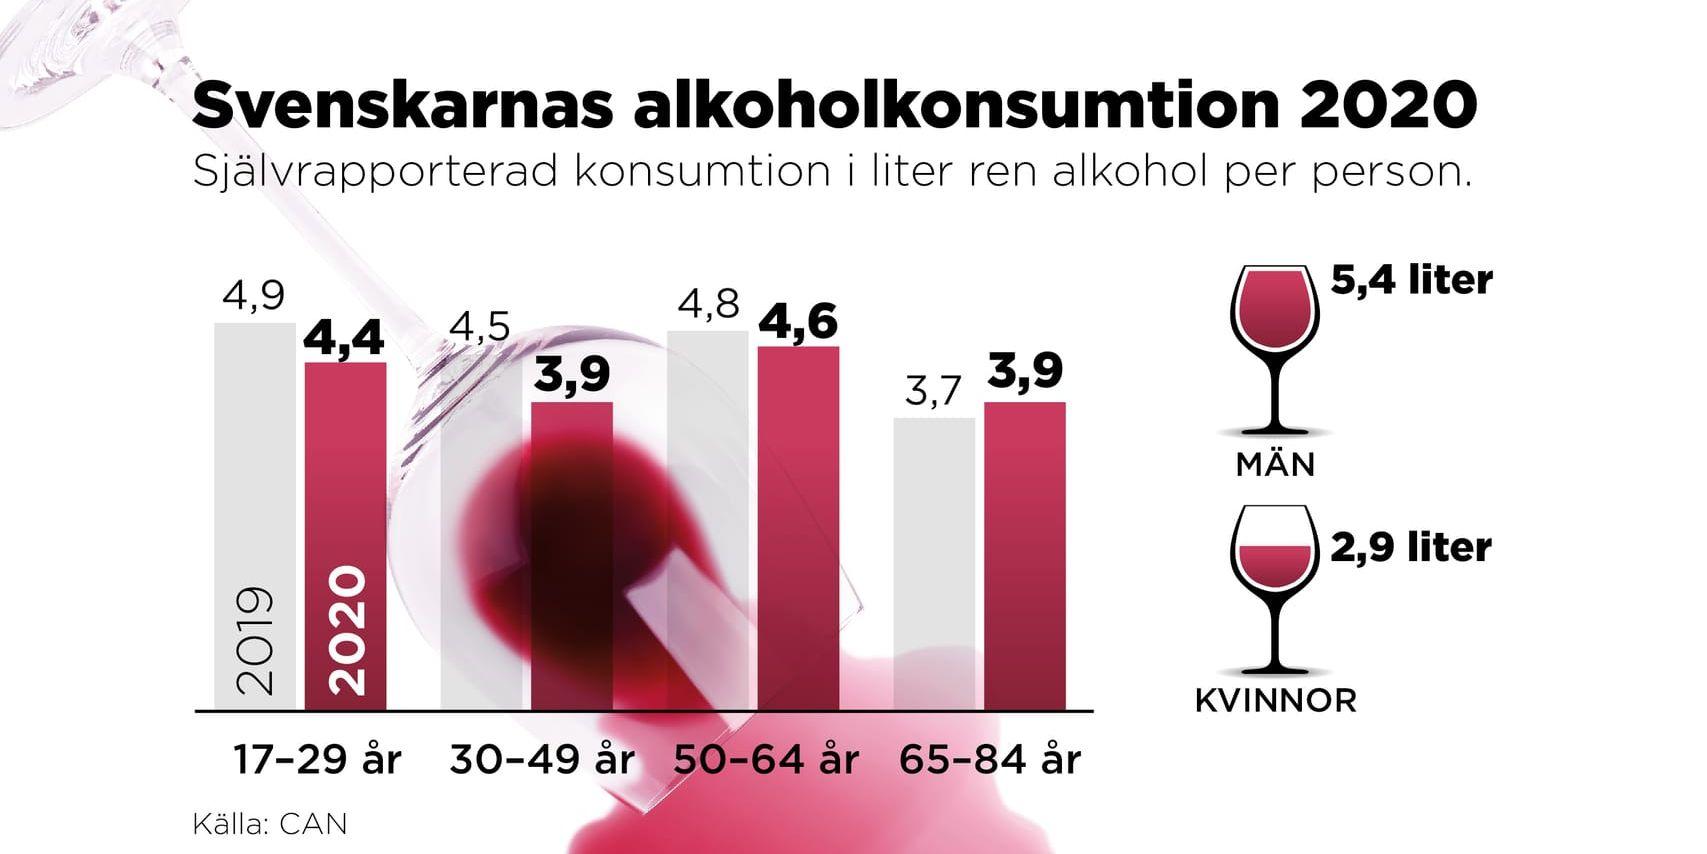 Äldre, 64-85 år, drack mer 2020 jämfört med året innan.